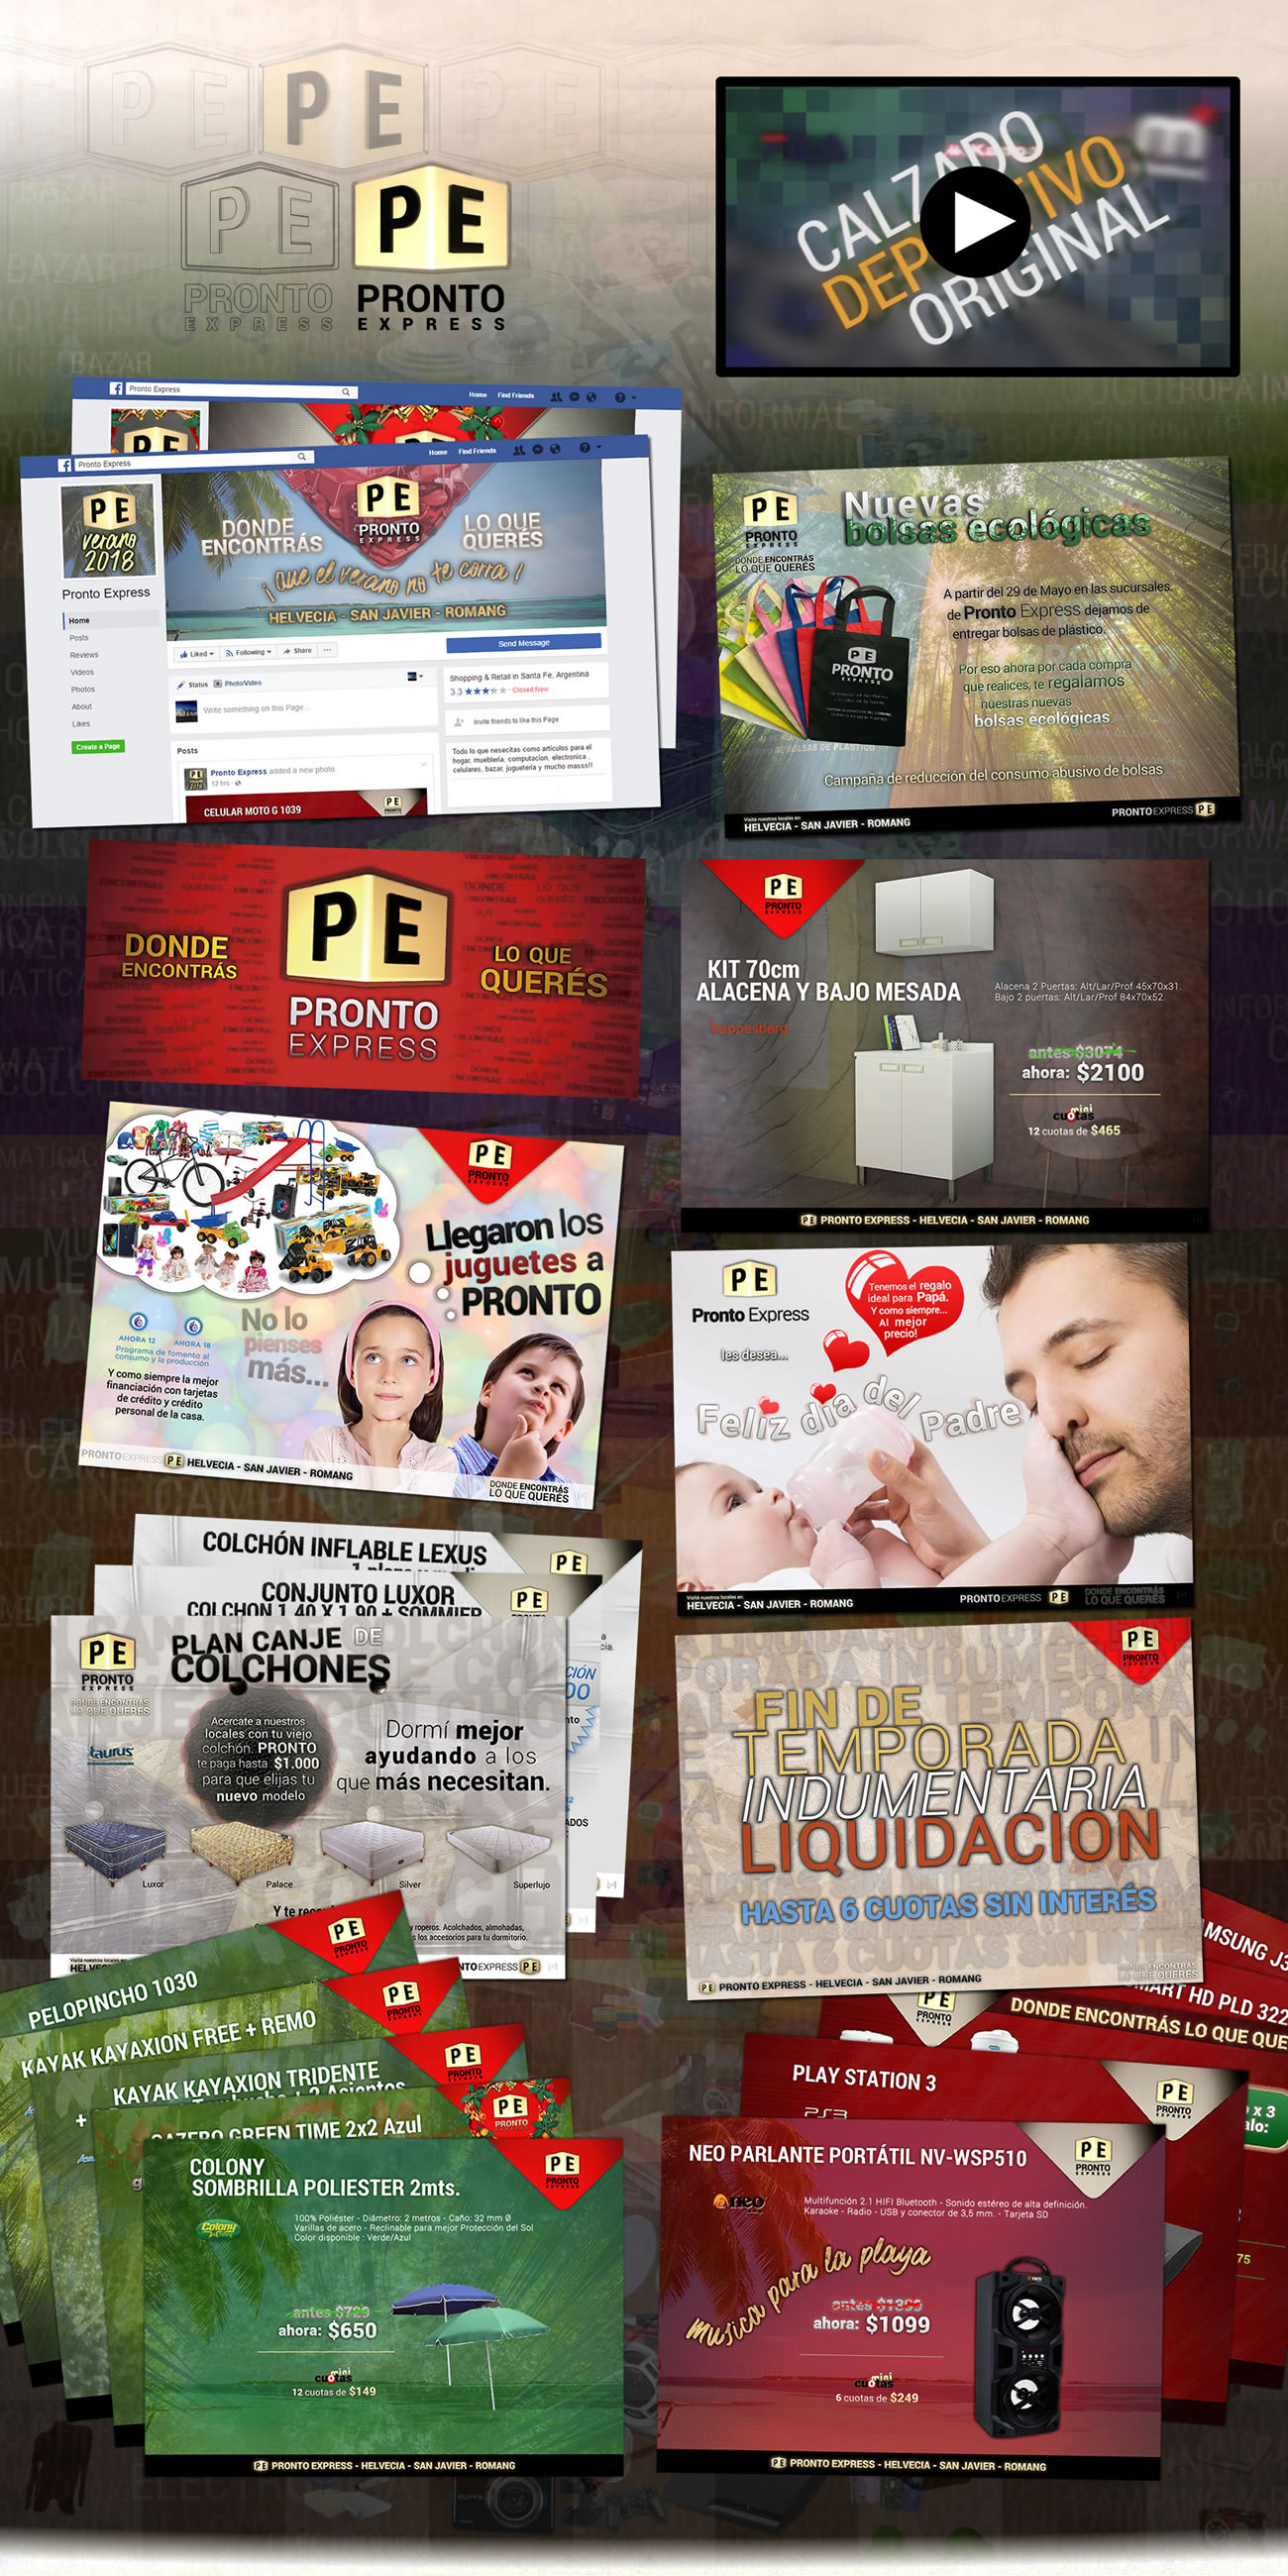 Imagen de Pronto Express | Marca, Folletos/Flyers, Redes sociales, Spots en tv, Impresos